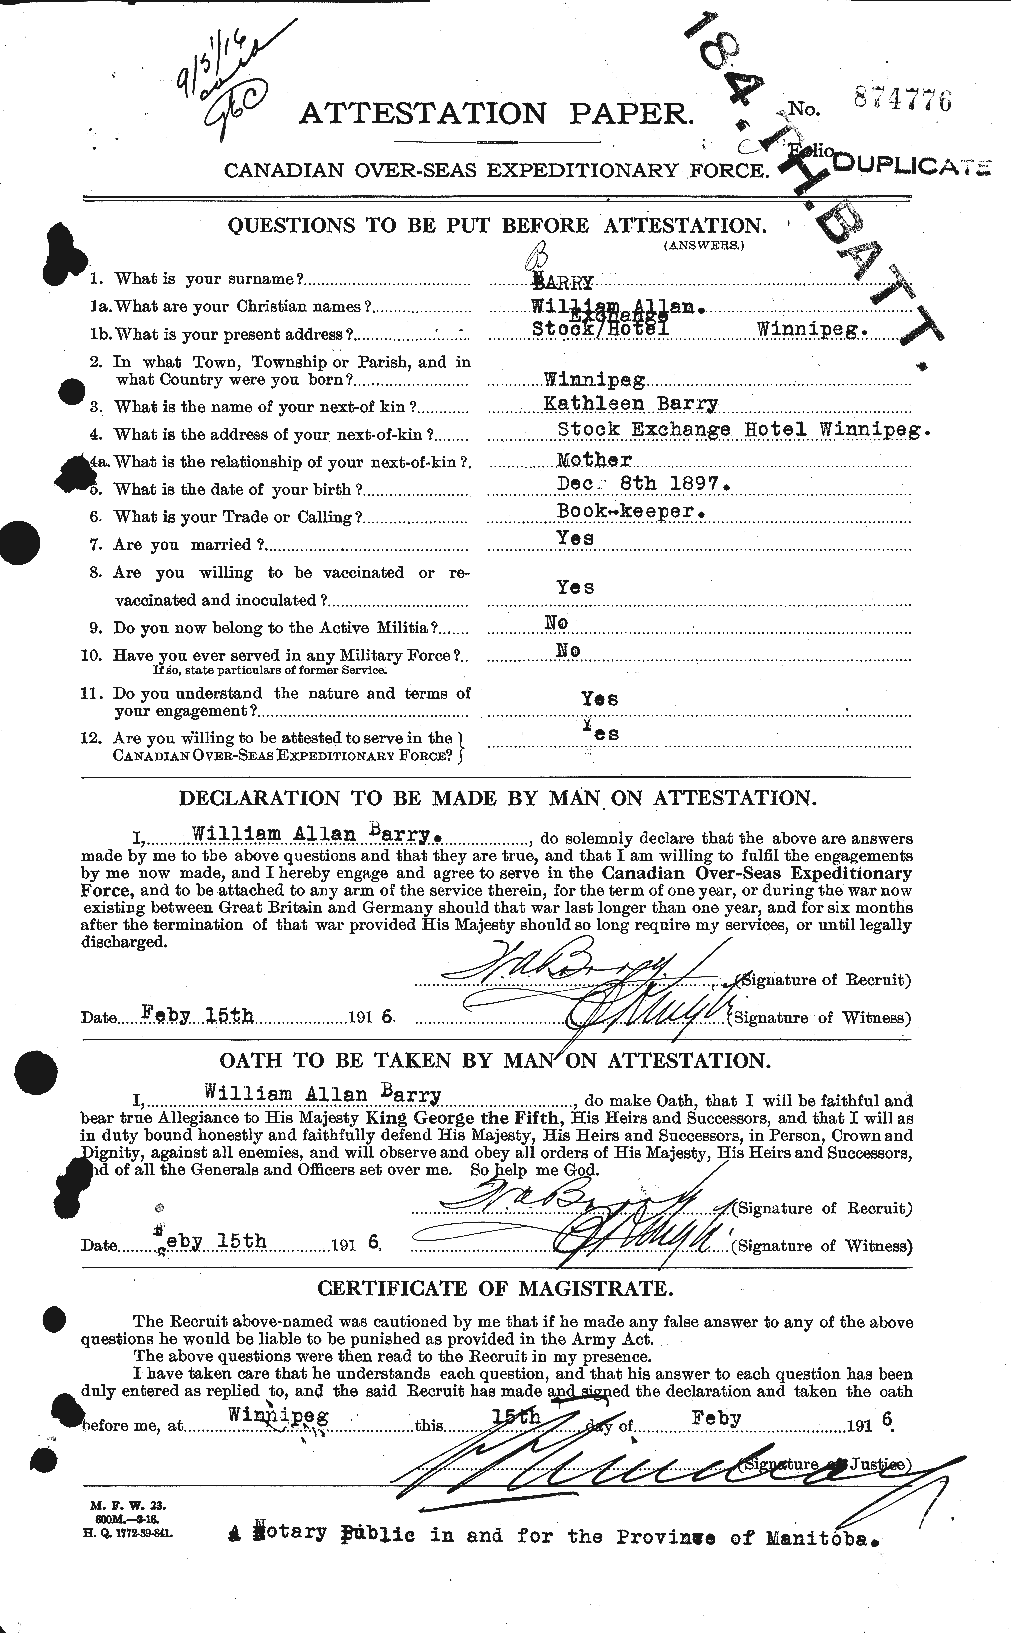 Dossiers du Personnel de la Première Guerre mondiale - CEC 222052a